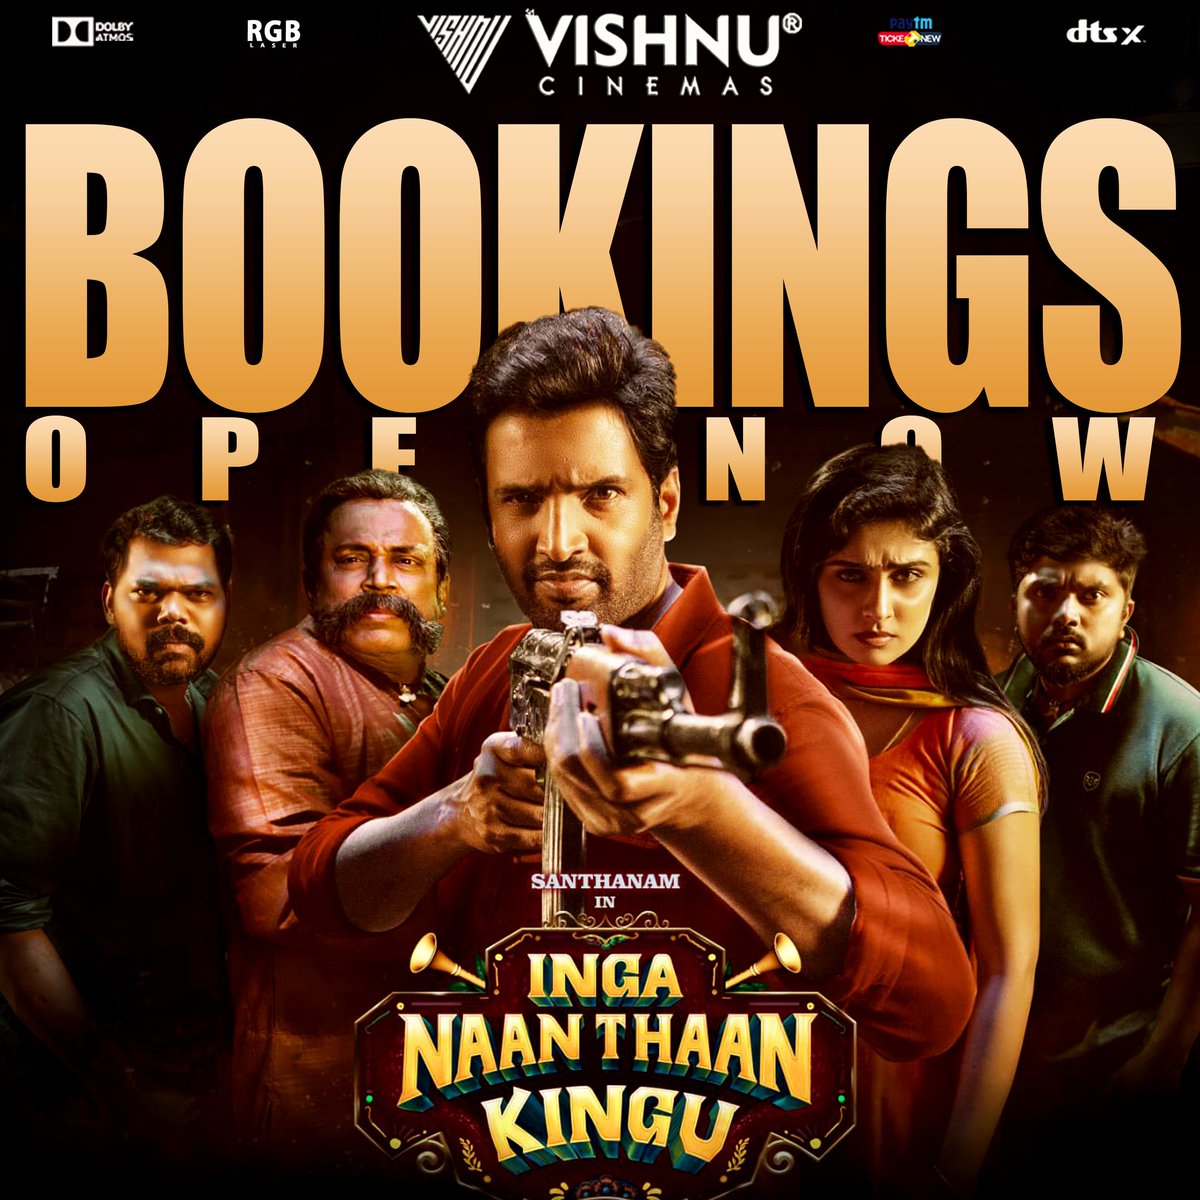 #IngaNaanThaanKingu from tomorrow @VishnuCinemas BOOKINGS OPEN NOW @TicketNew